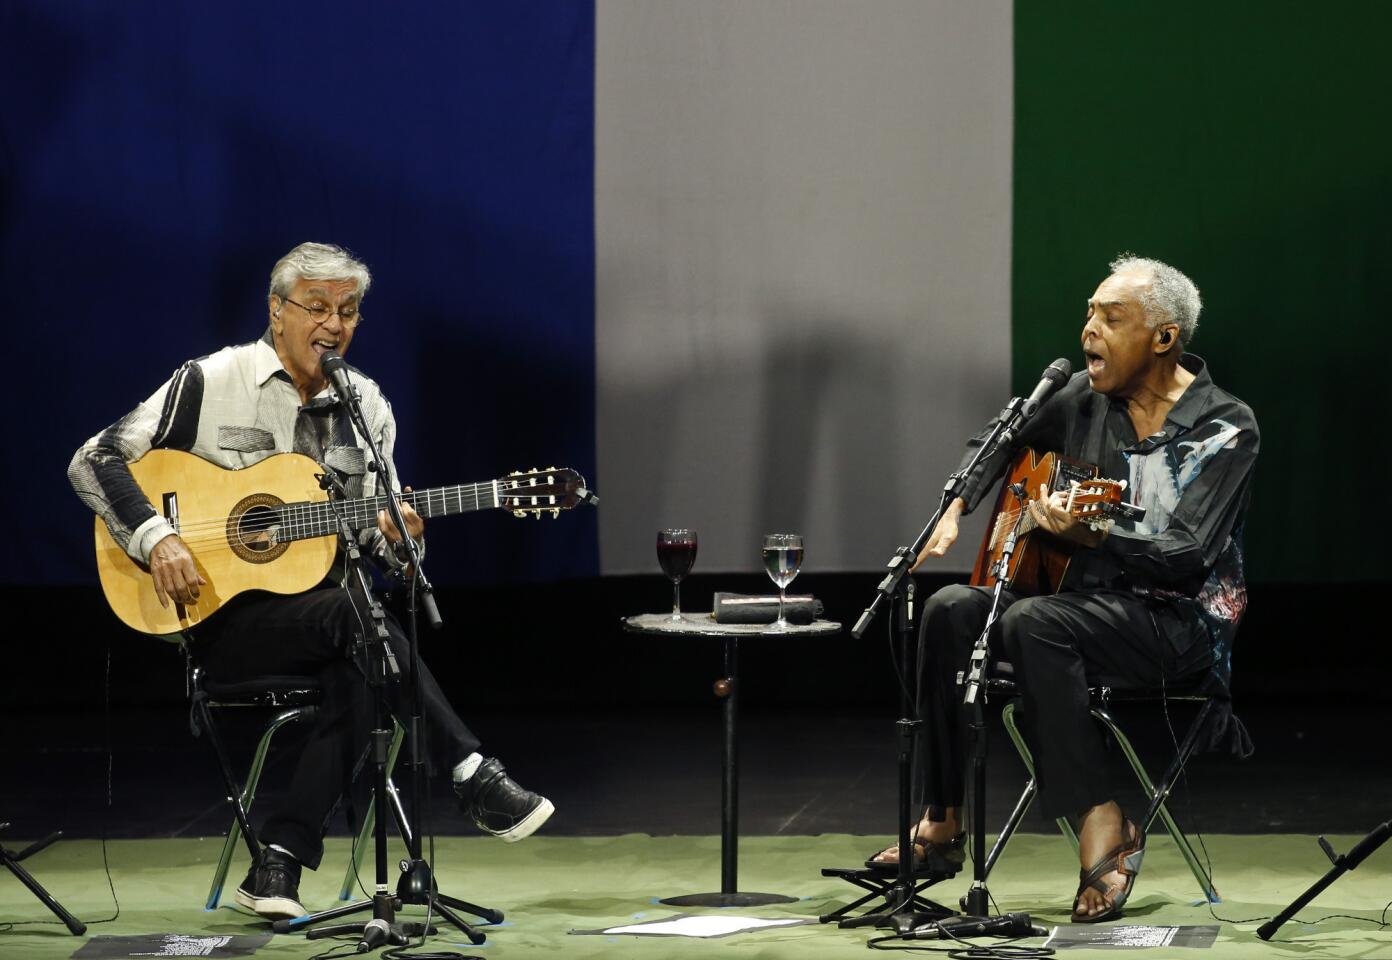 Caetano Veloso and Gilberto Gil